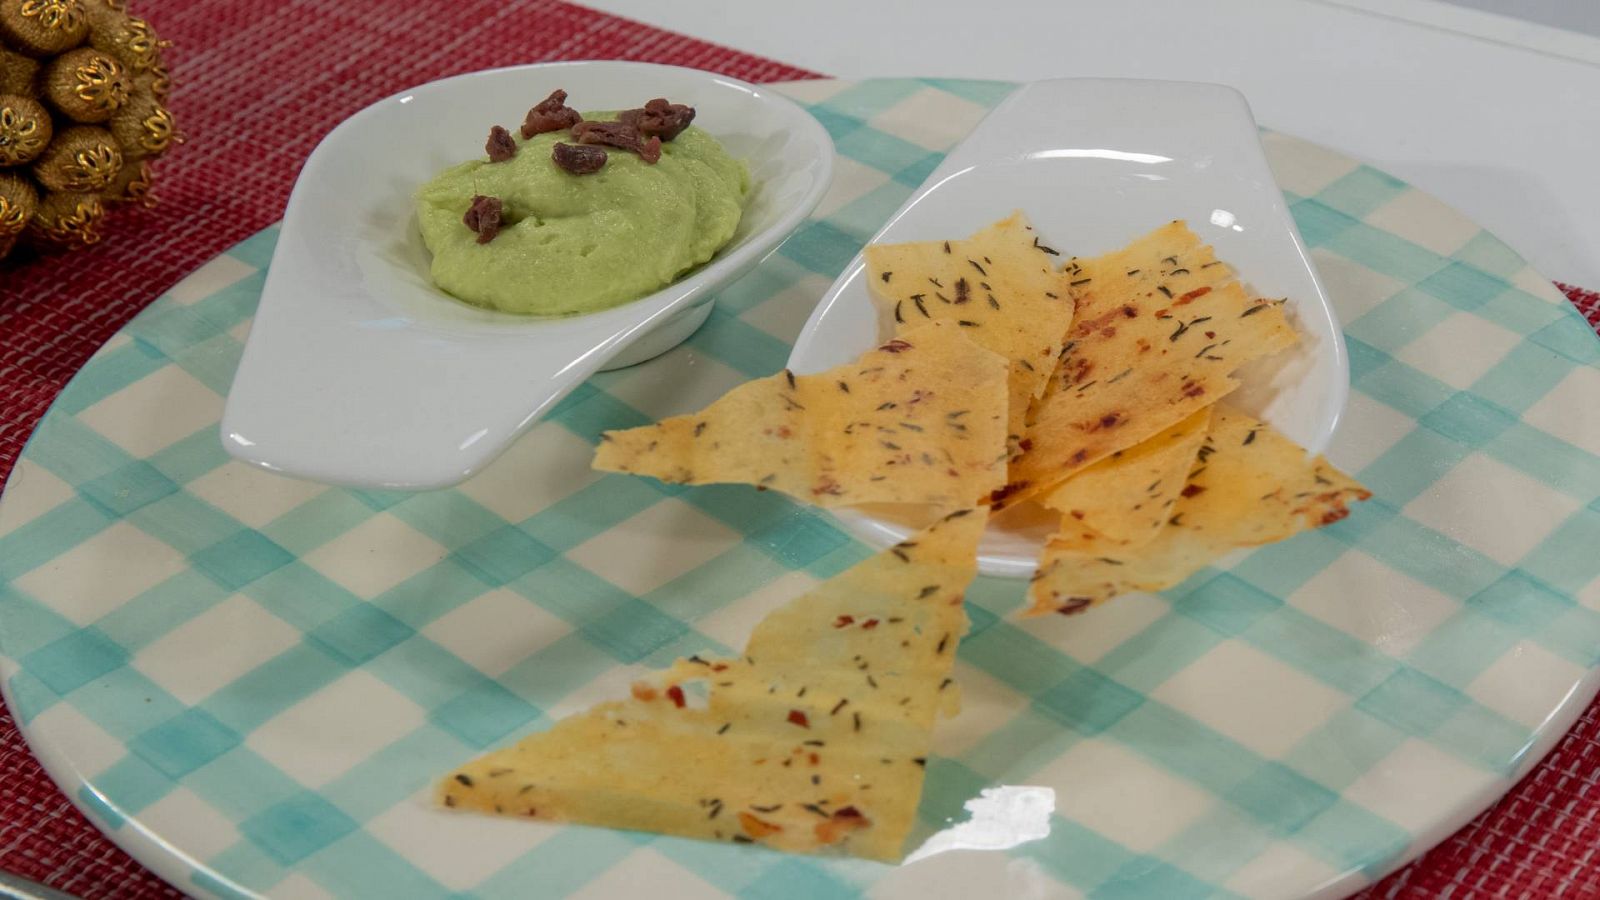 Receta de nachos de patata para dippear del chef Sergio Fernández